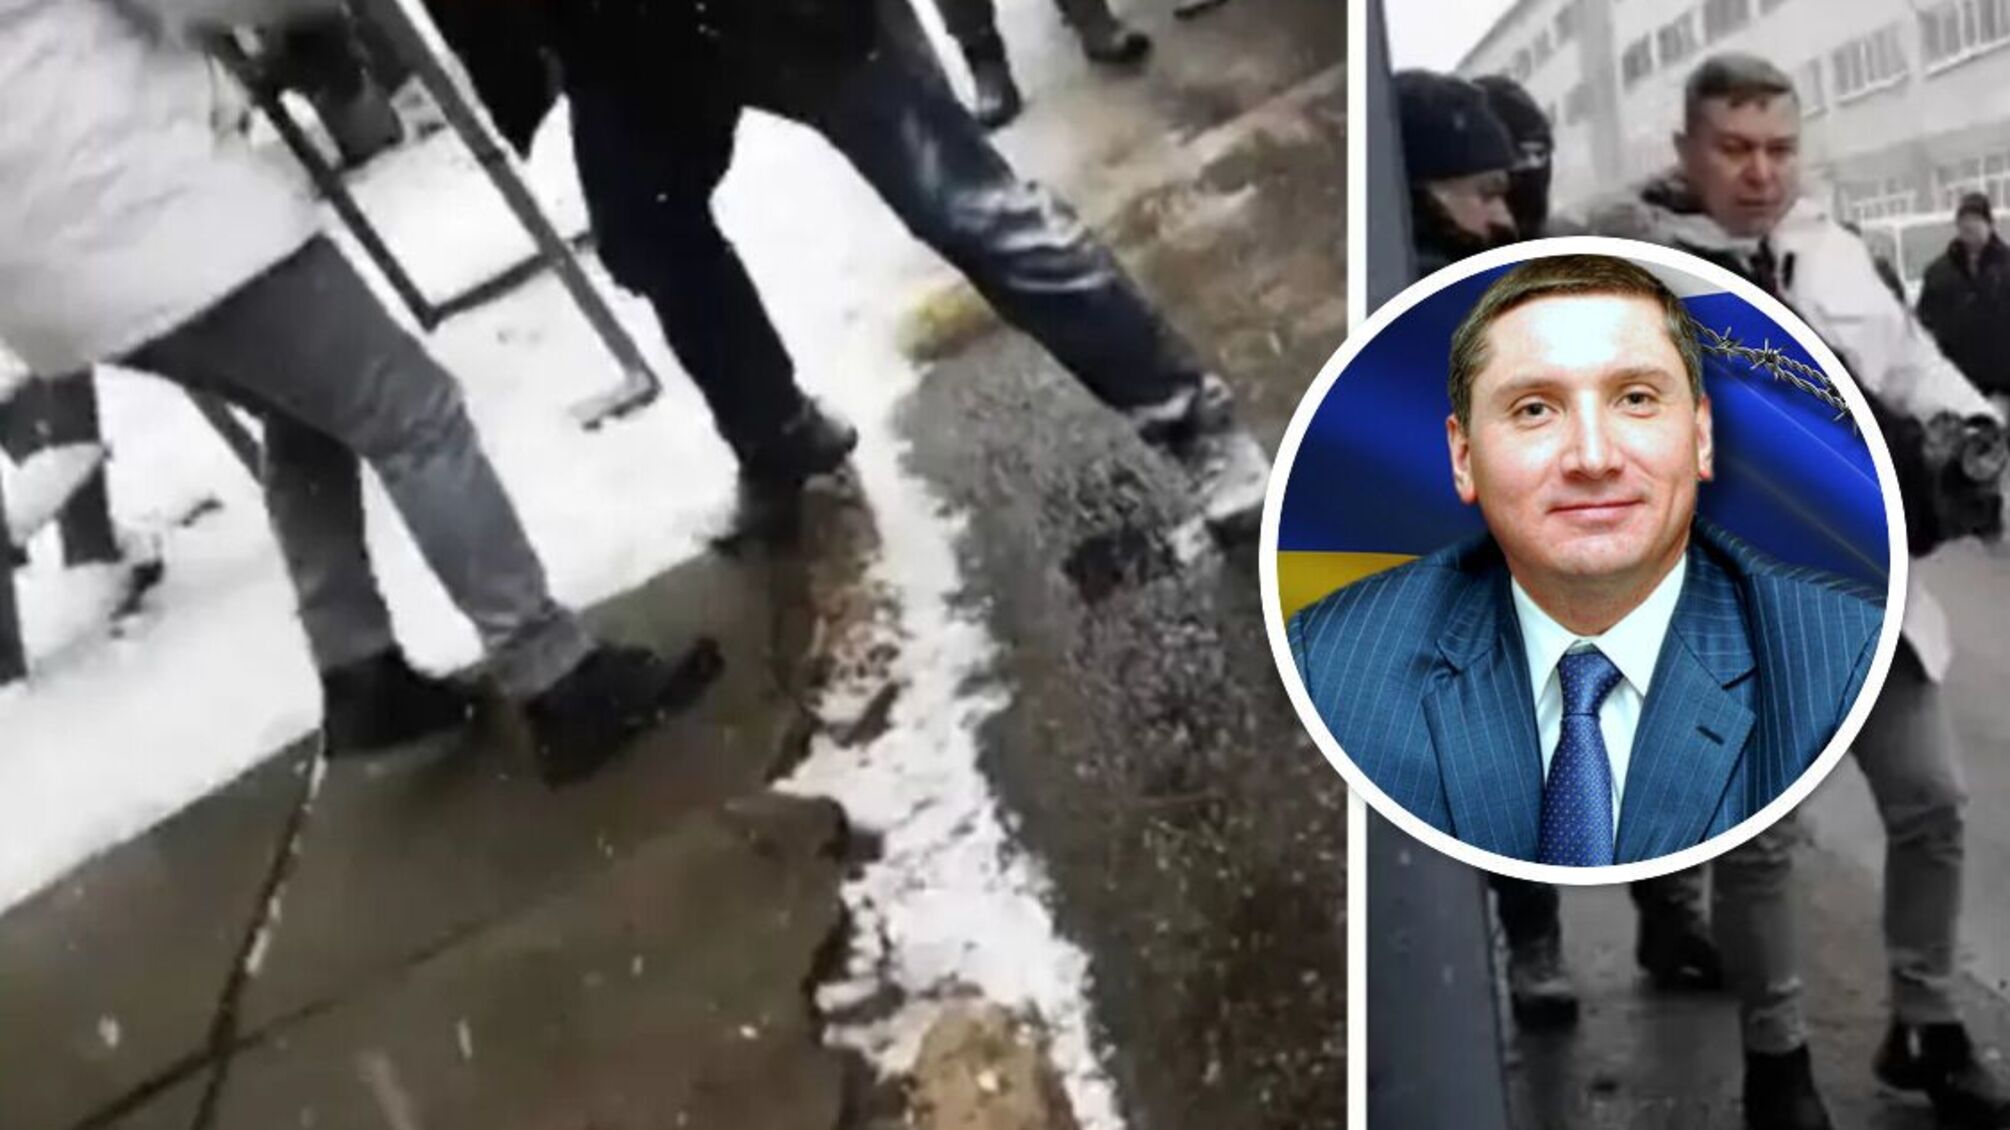 Сутичка у Броварах: люди олігарха Поліщука побили журналіста й заблокували завод (відео)